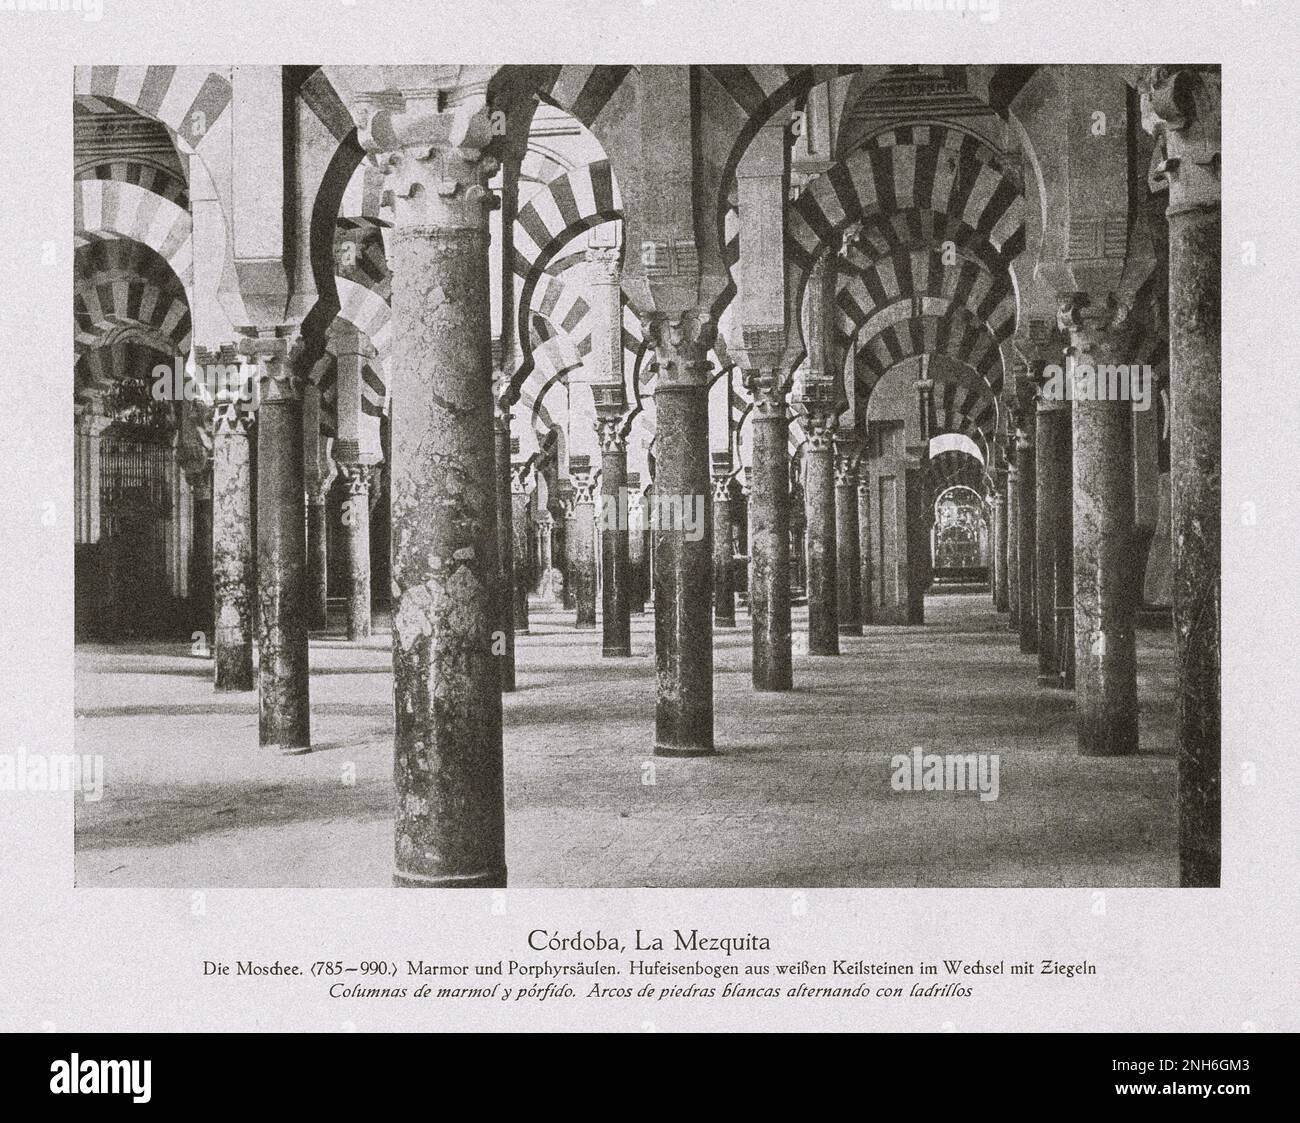 Architektur des alten Spaniens. Cordoba, La Mezquita Moschee. (785-990). Säulen aus Marmor und Porphyrie. Hufeisenbogen aus weißen Keilsteinen, die sich mit Ziegeln abwechseln Stockfoto